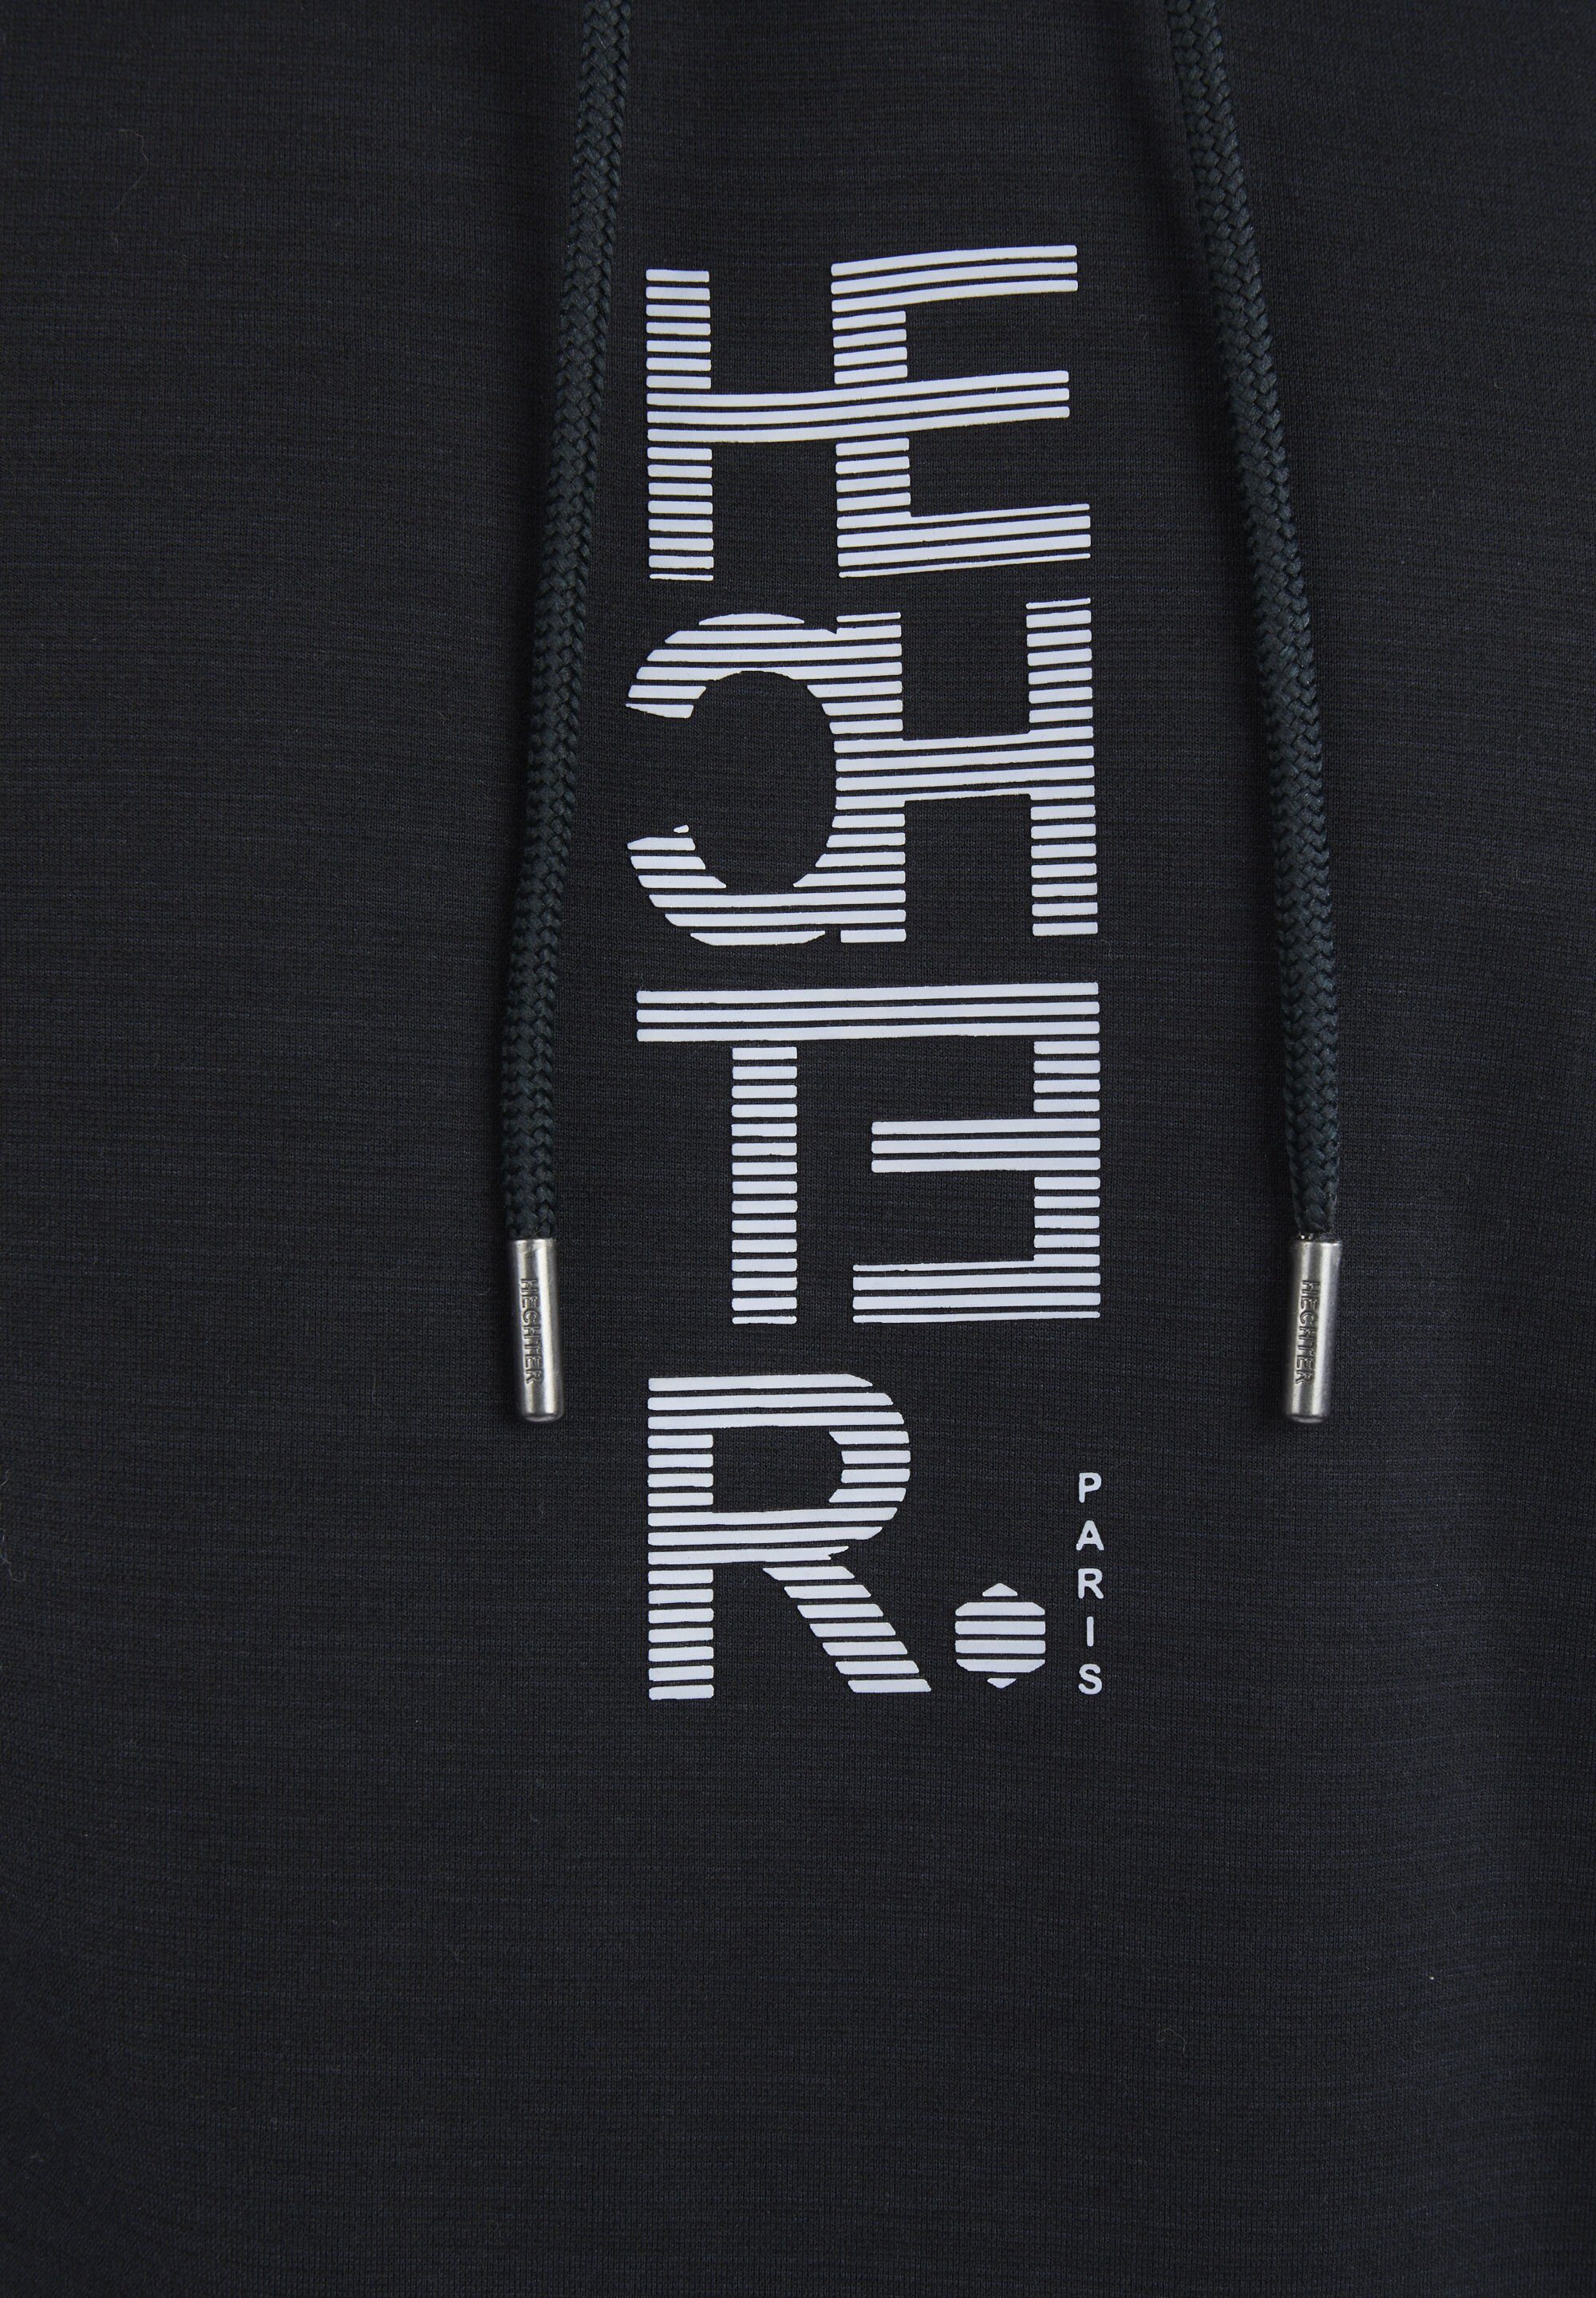 HECHTER print Sweatshirt PARIS